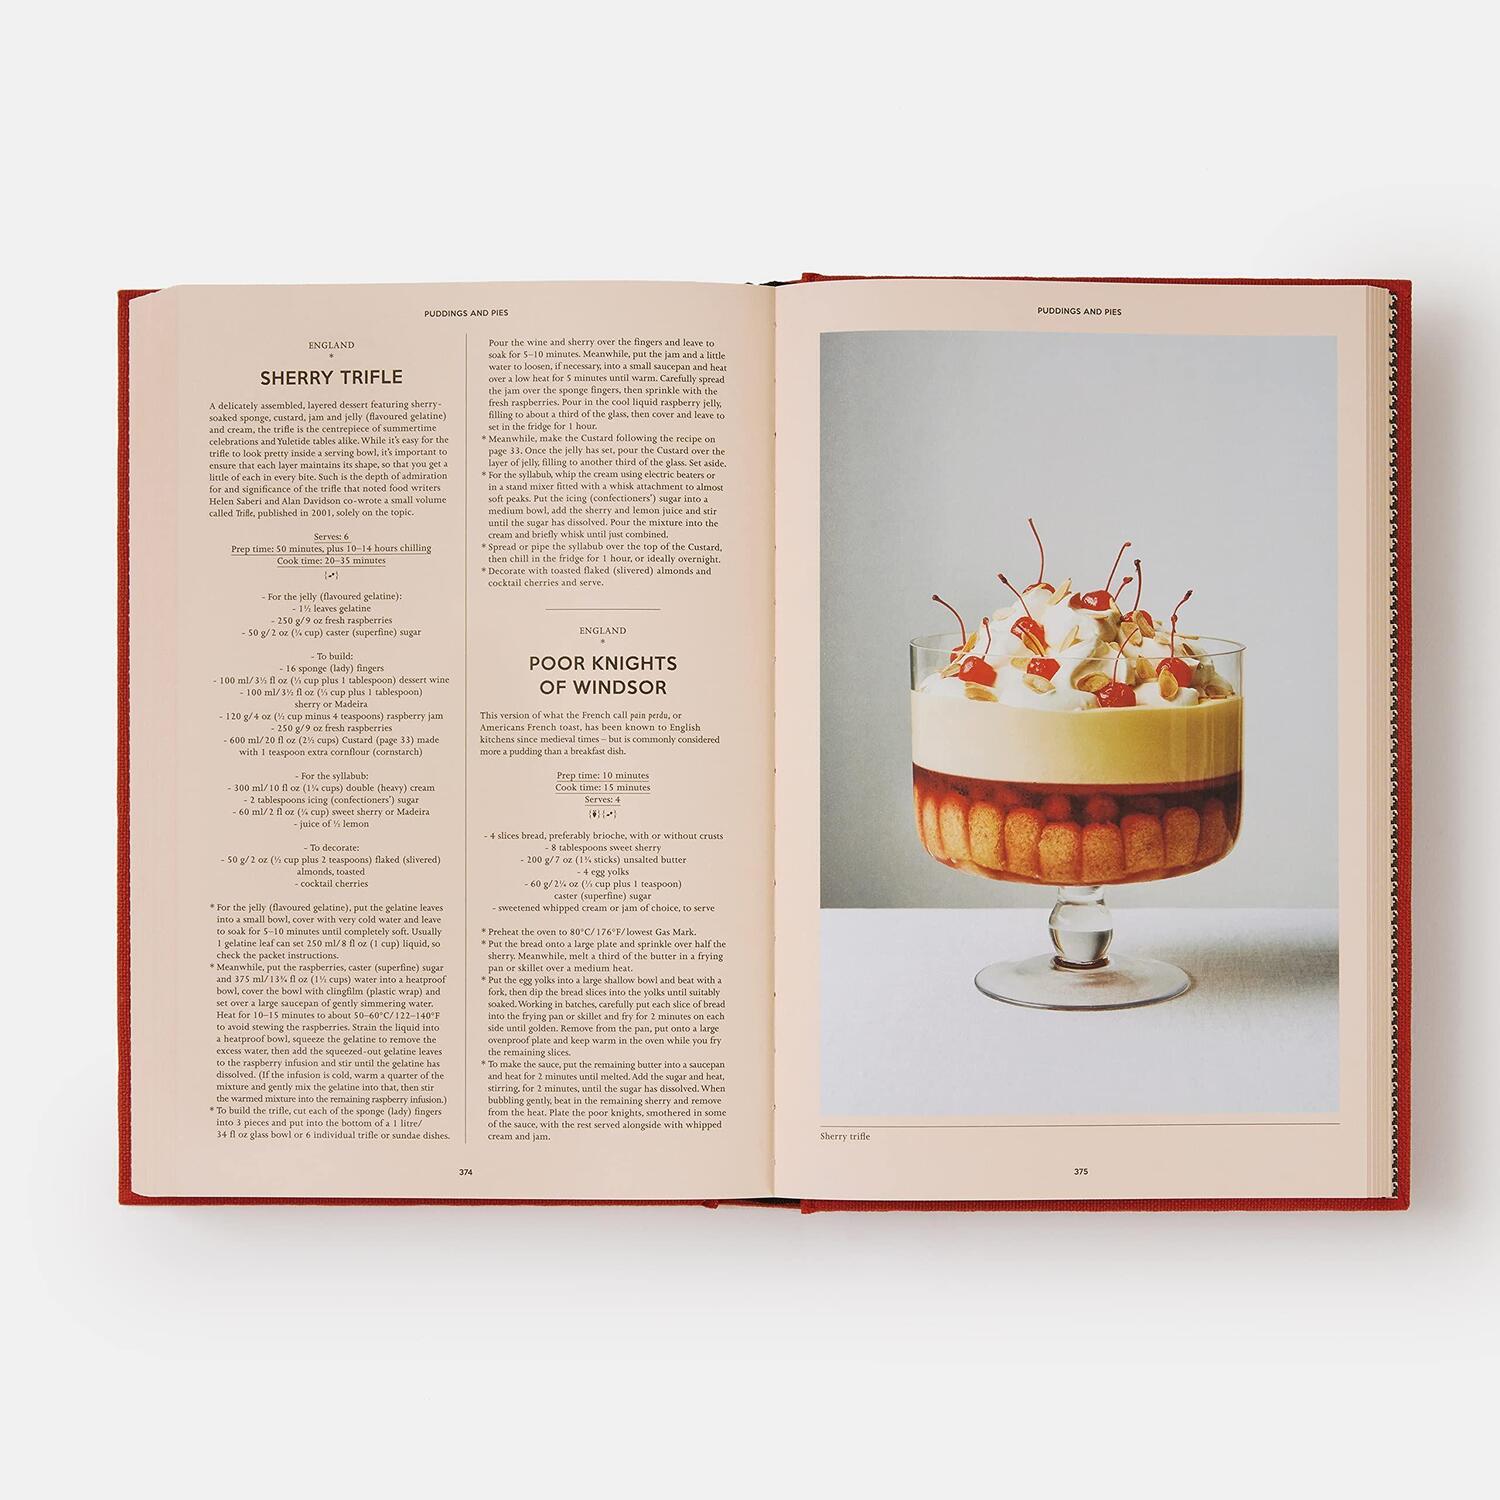 Bild: 9781838665289 | The British Cookbook | Ben Mervis (u. a.) | Buch | Englisch | 2022